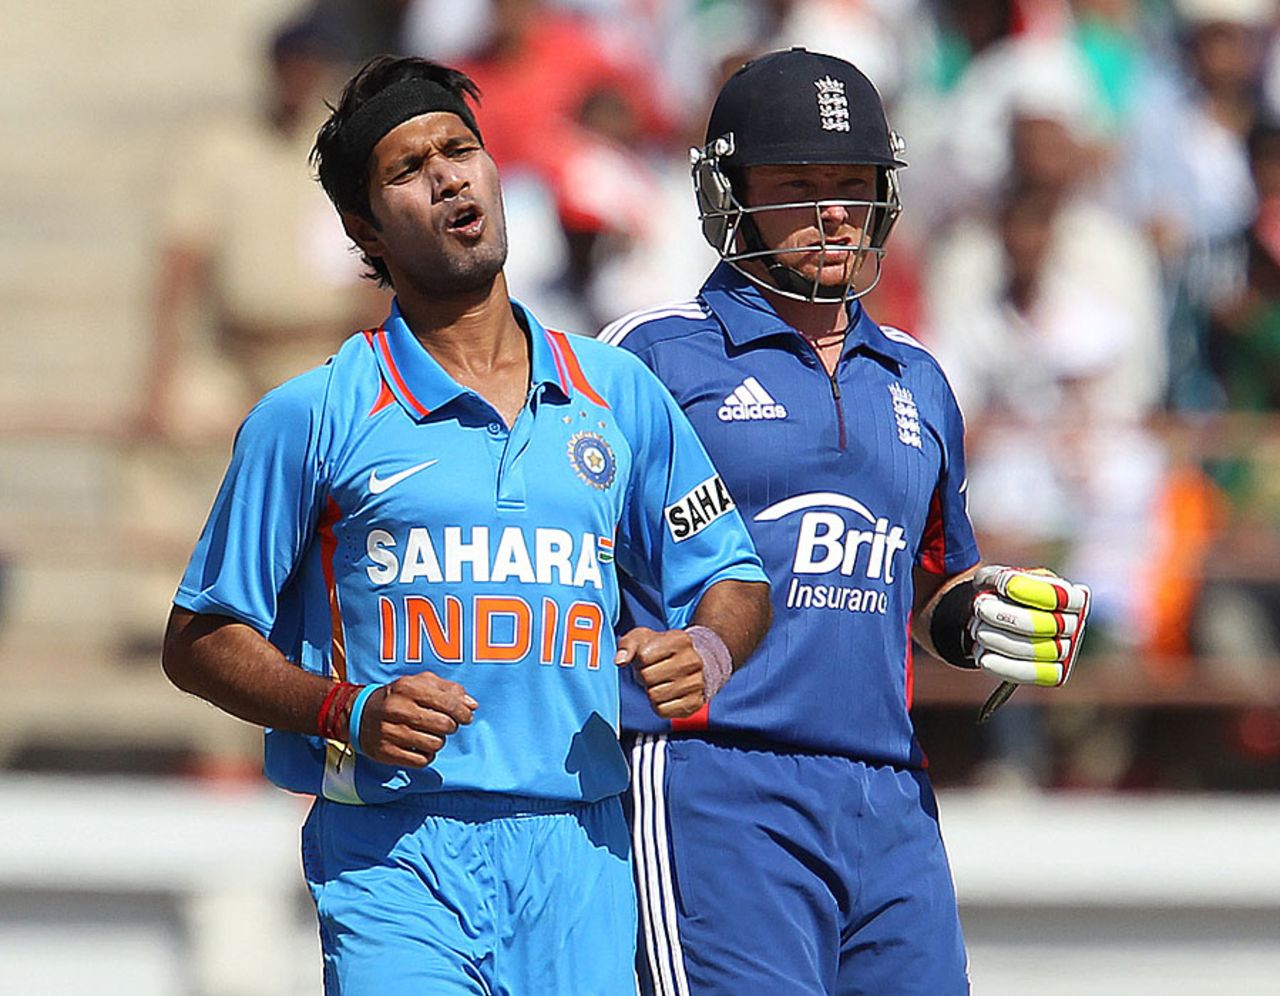 Ashok Dinda grimaces after bowling a delivery, India v England, 1st ODI, Rajkot, January 11, 2013